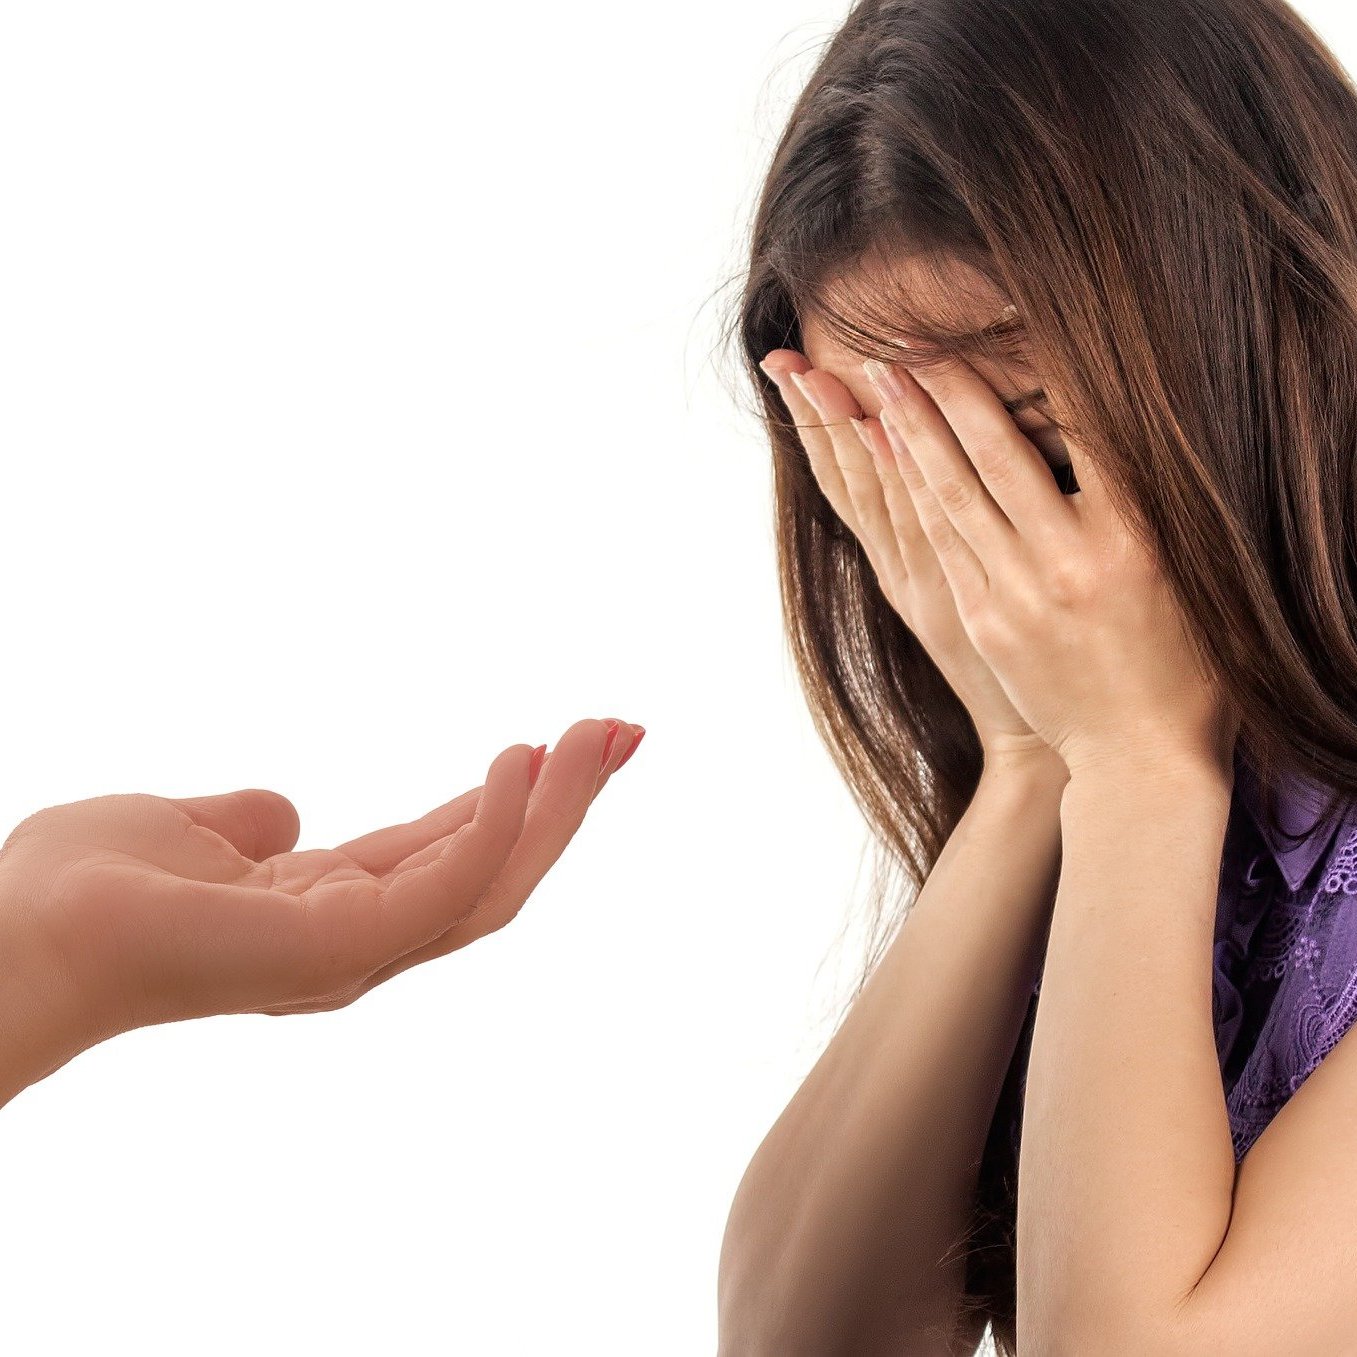 Einem weinenden Mädchen wird eine helfende Hand gereicht